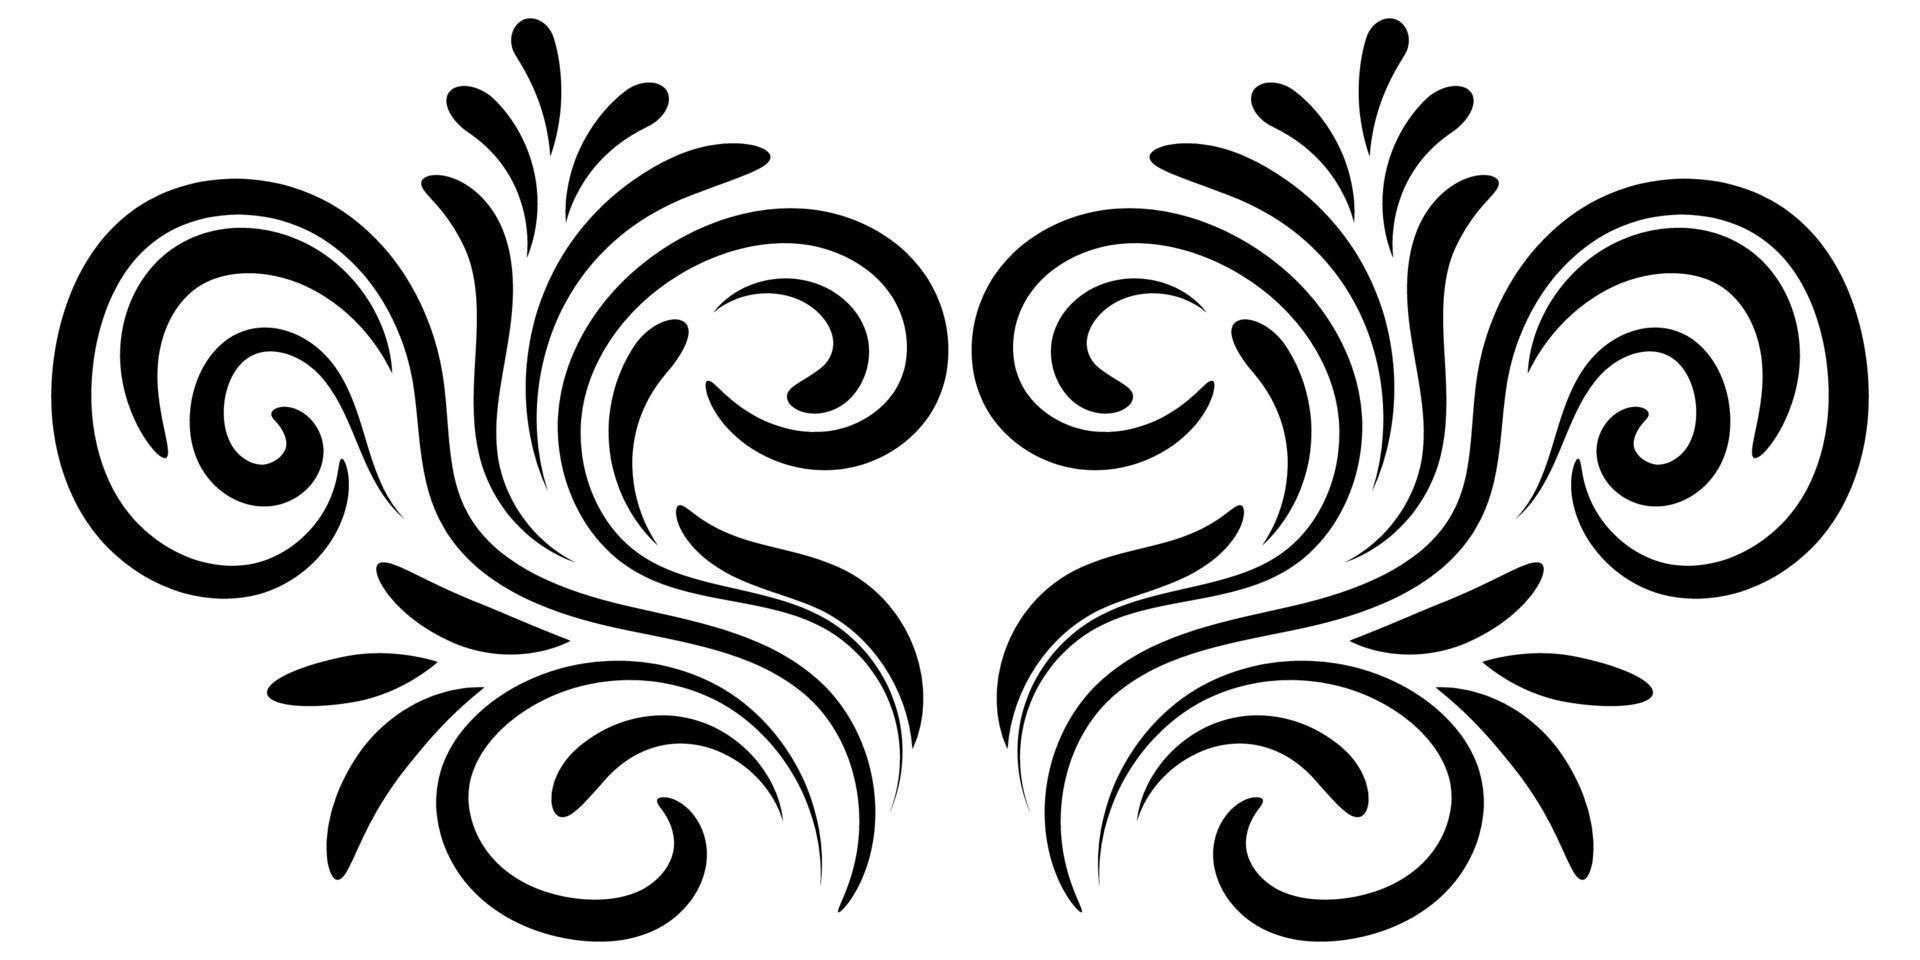 zwart abstract krullend element voor ontwerp, swirl, curl. scheidingslijn, frame geïsoleerd op een witte achtergrond. vector